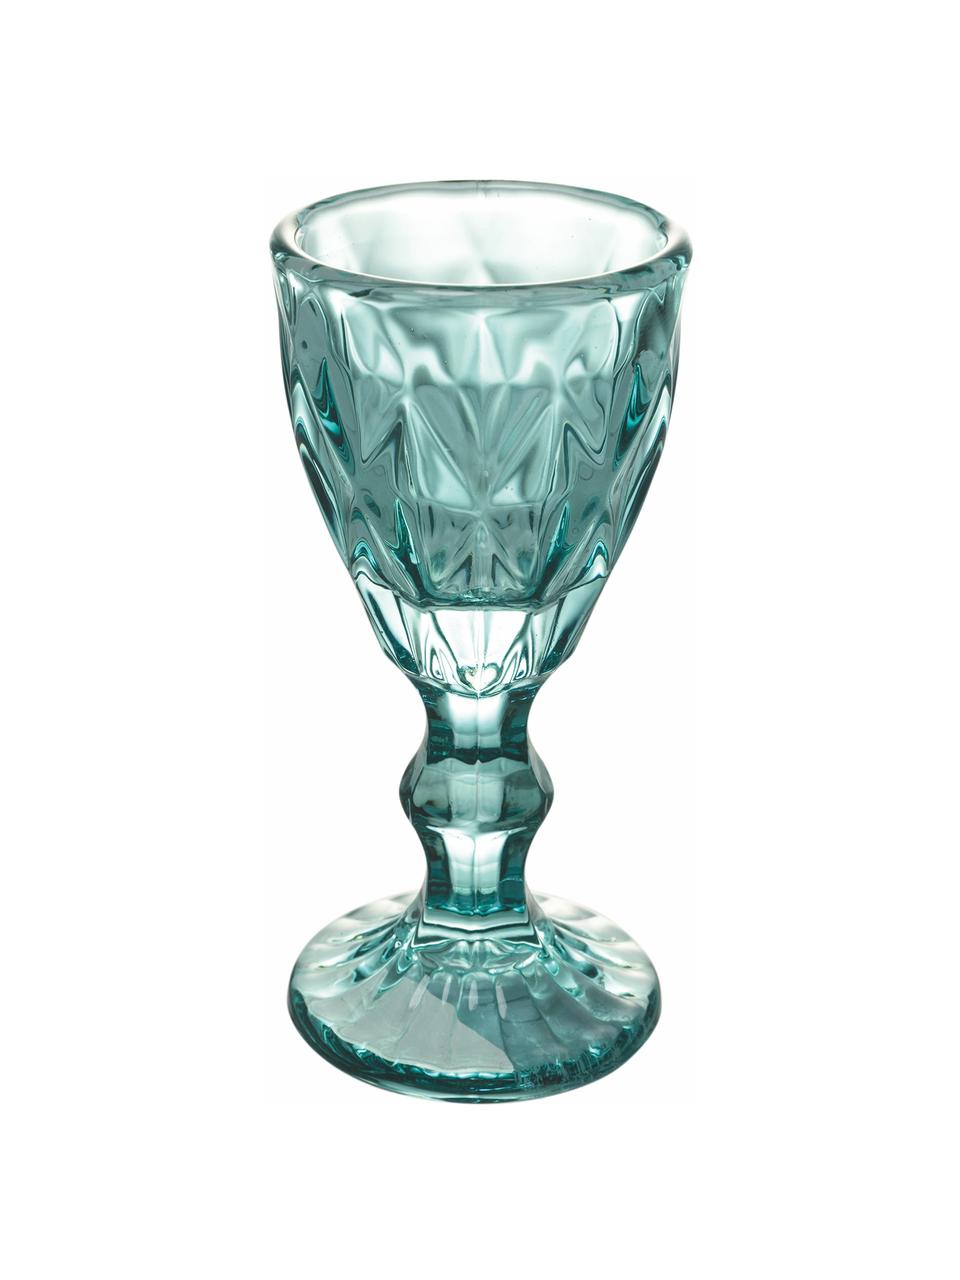 Borrelglaasjes Shades met structuurpatroon, set van 6, Glas, Blauwtinten, Ø 5 x H 11 cm